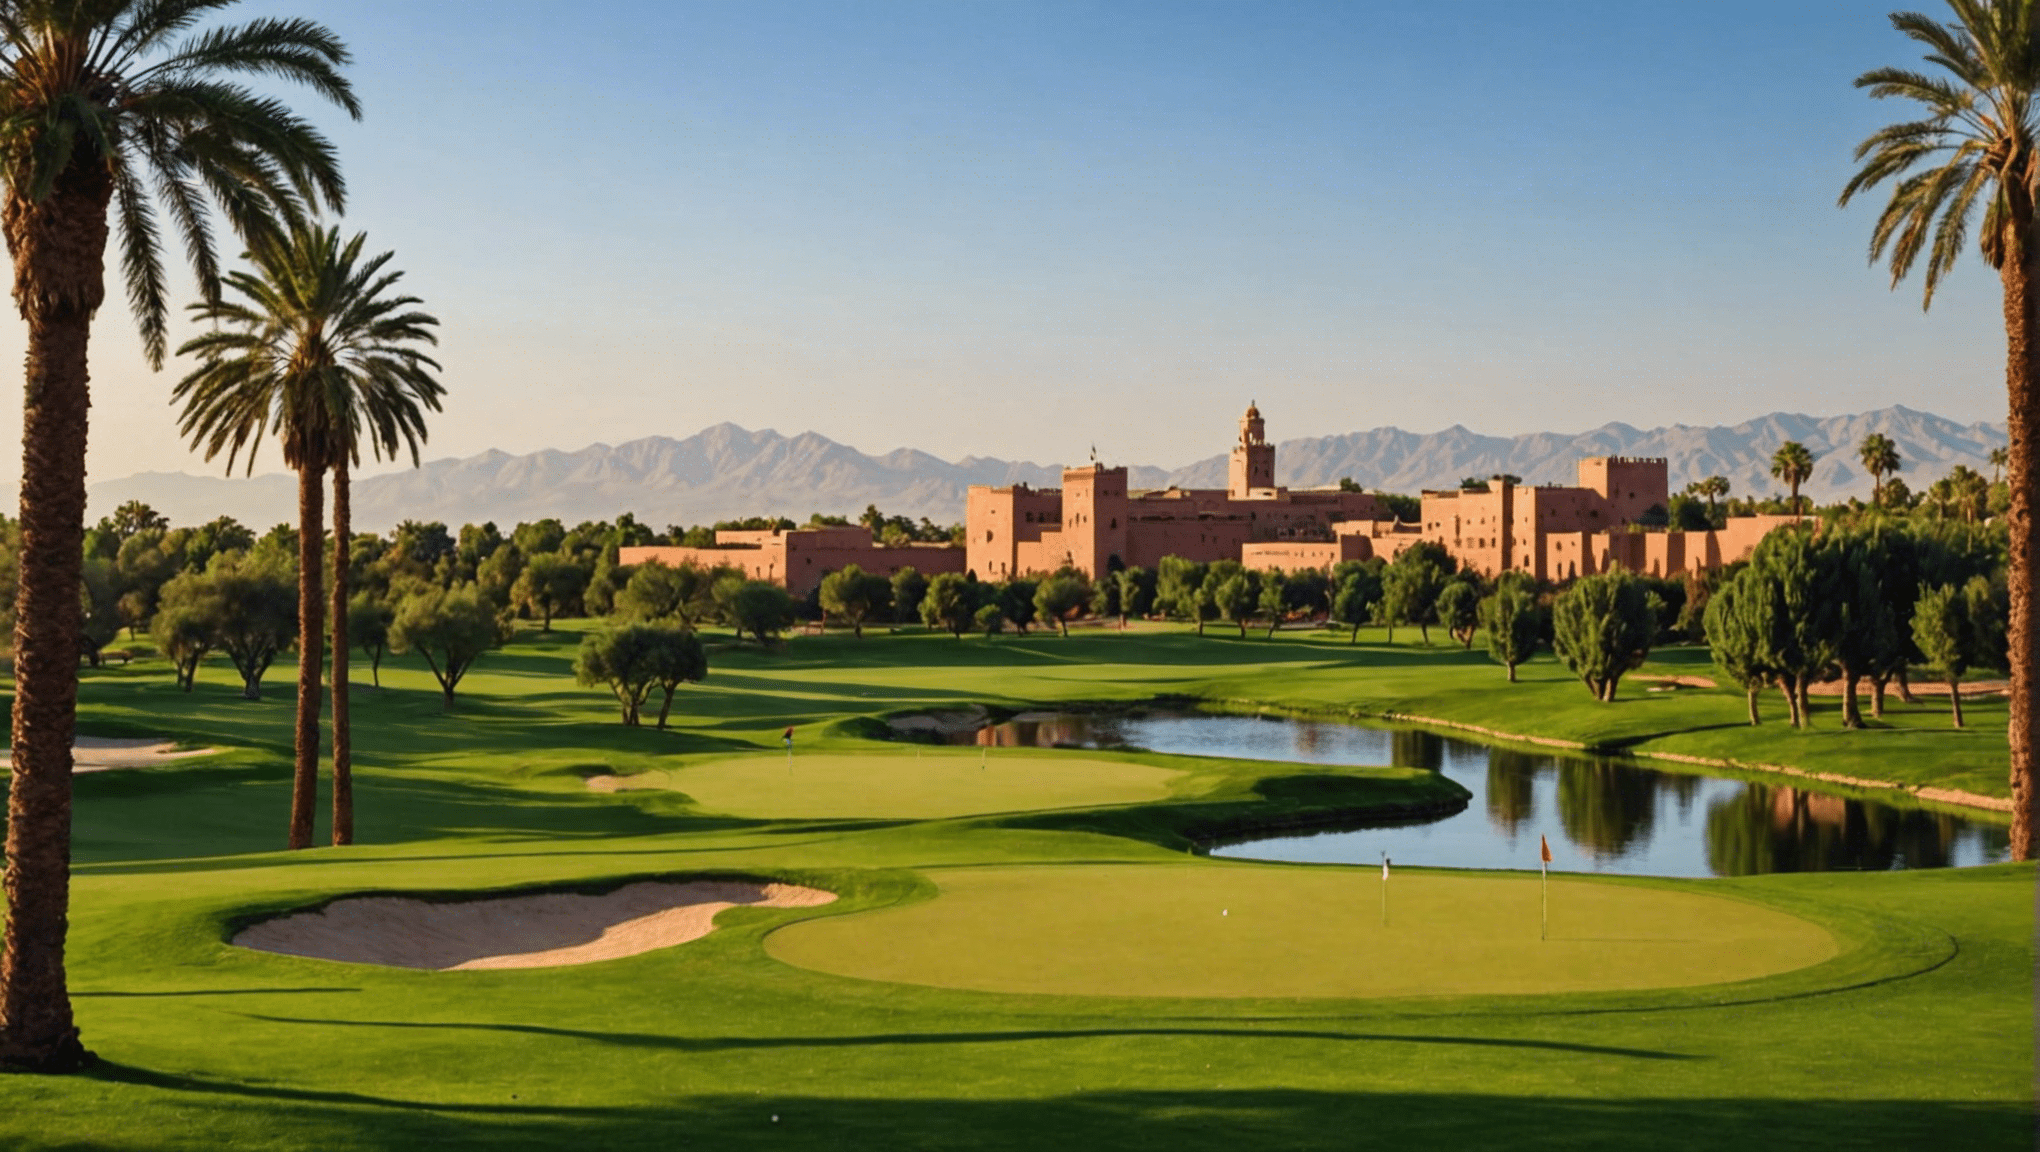 découvrez les nombreux golfs luxueux de marrakech, paradis des golfeurs. explorez les superbes options de golf dans cette ville luxueuse.